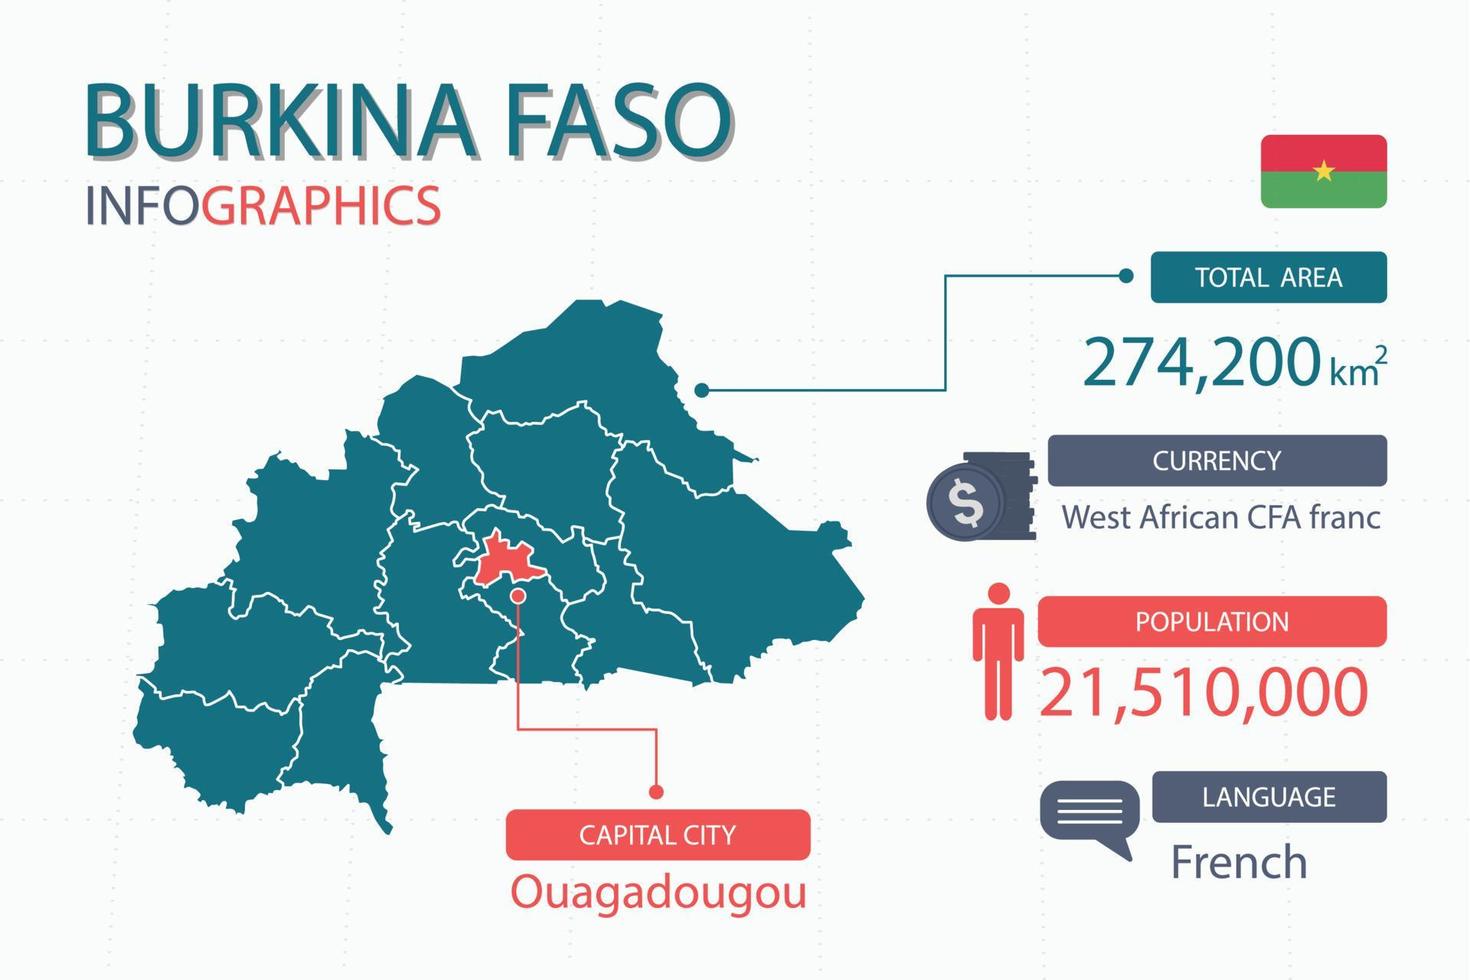 Burkina faso kaart infographic elementen met scheiden van rubriek is totaal gebieden, munteenheid, allemaal populaties, taal en de hoofdstad stad in deze land. vector